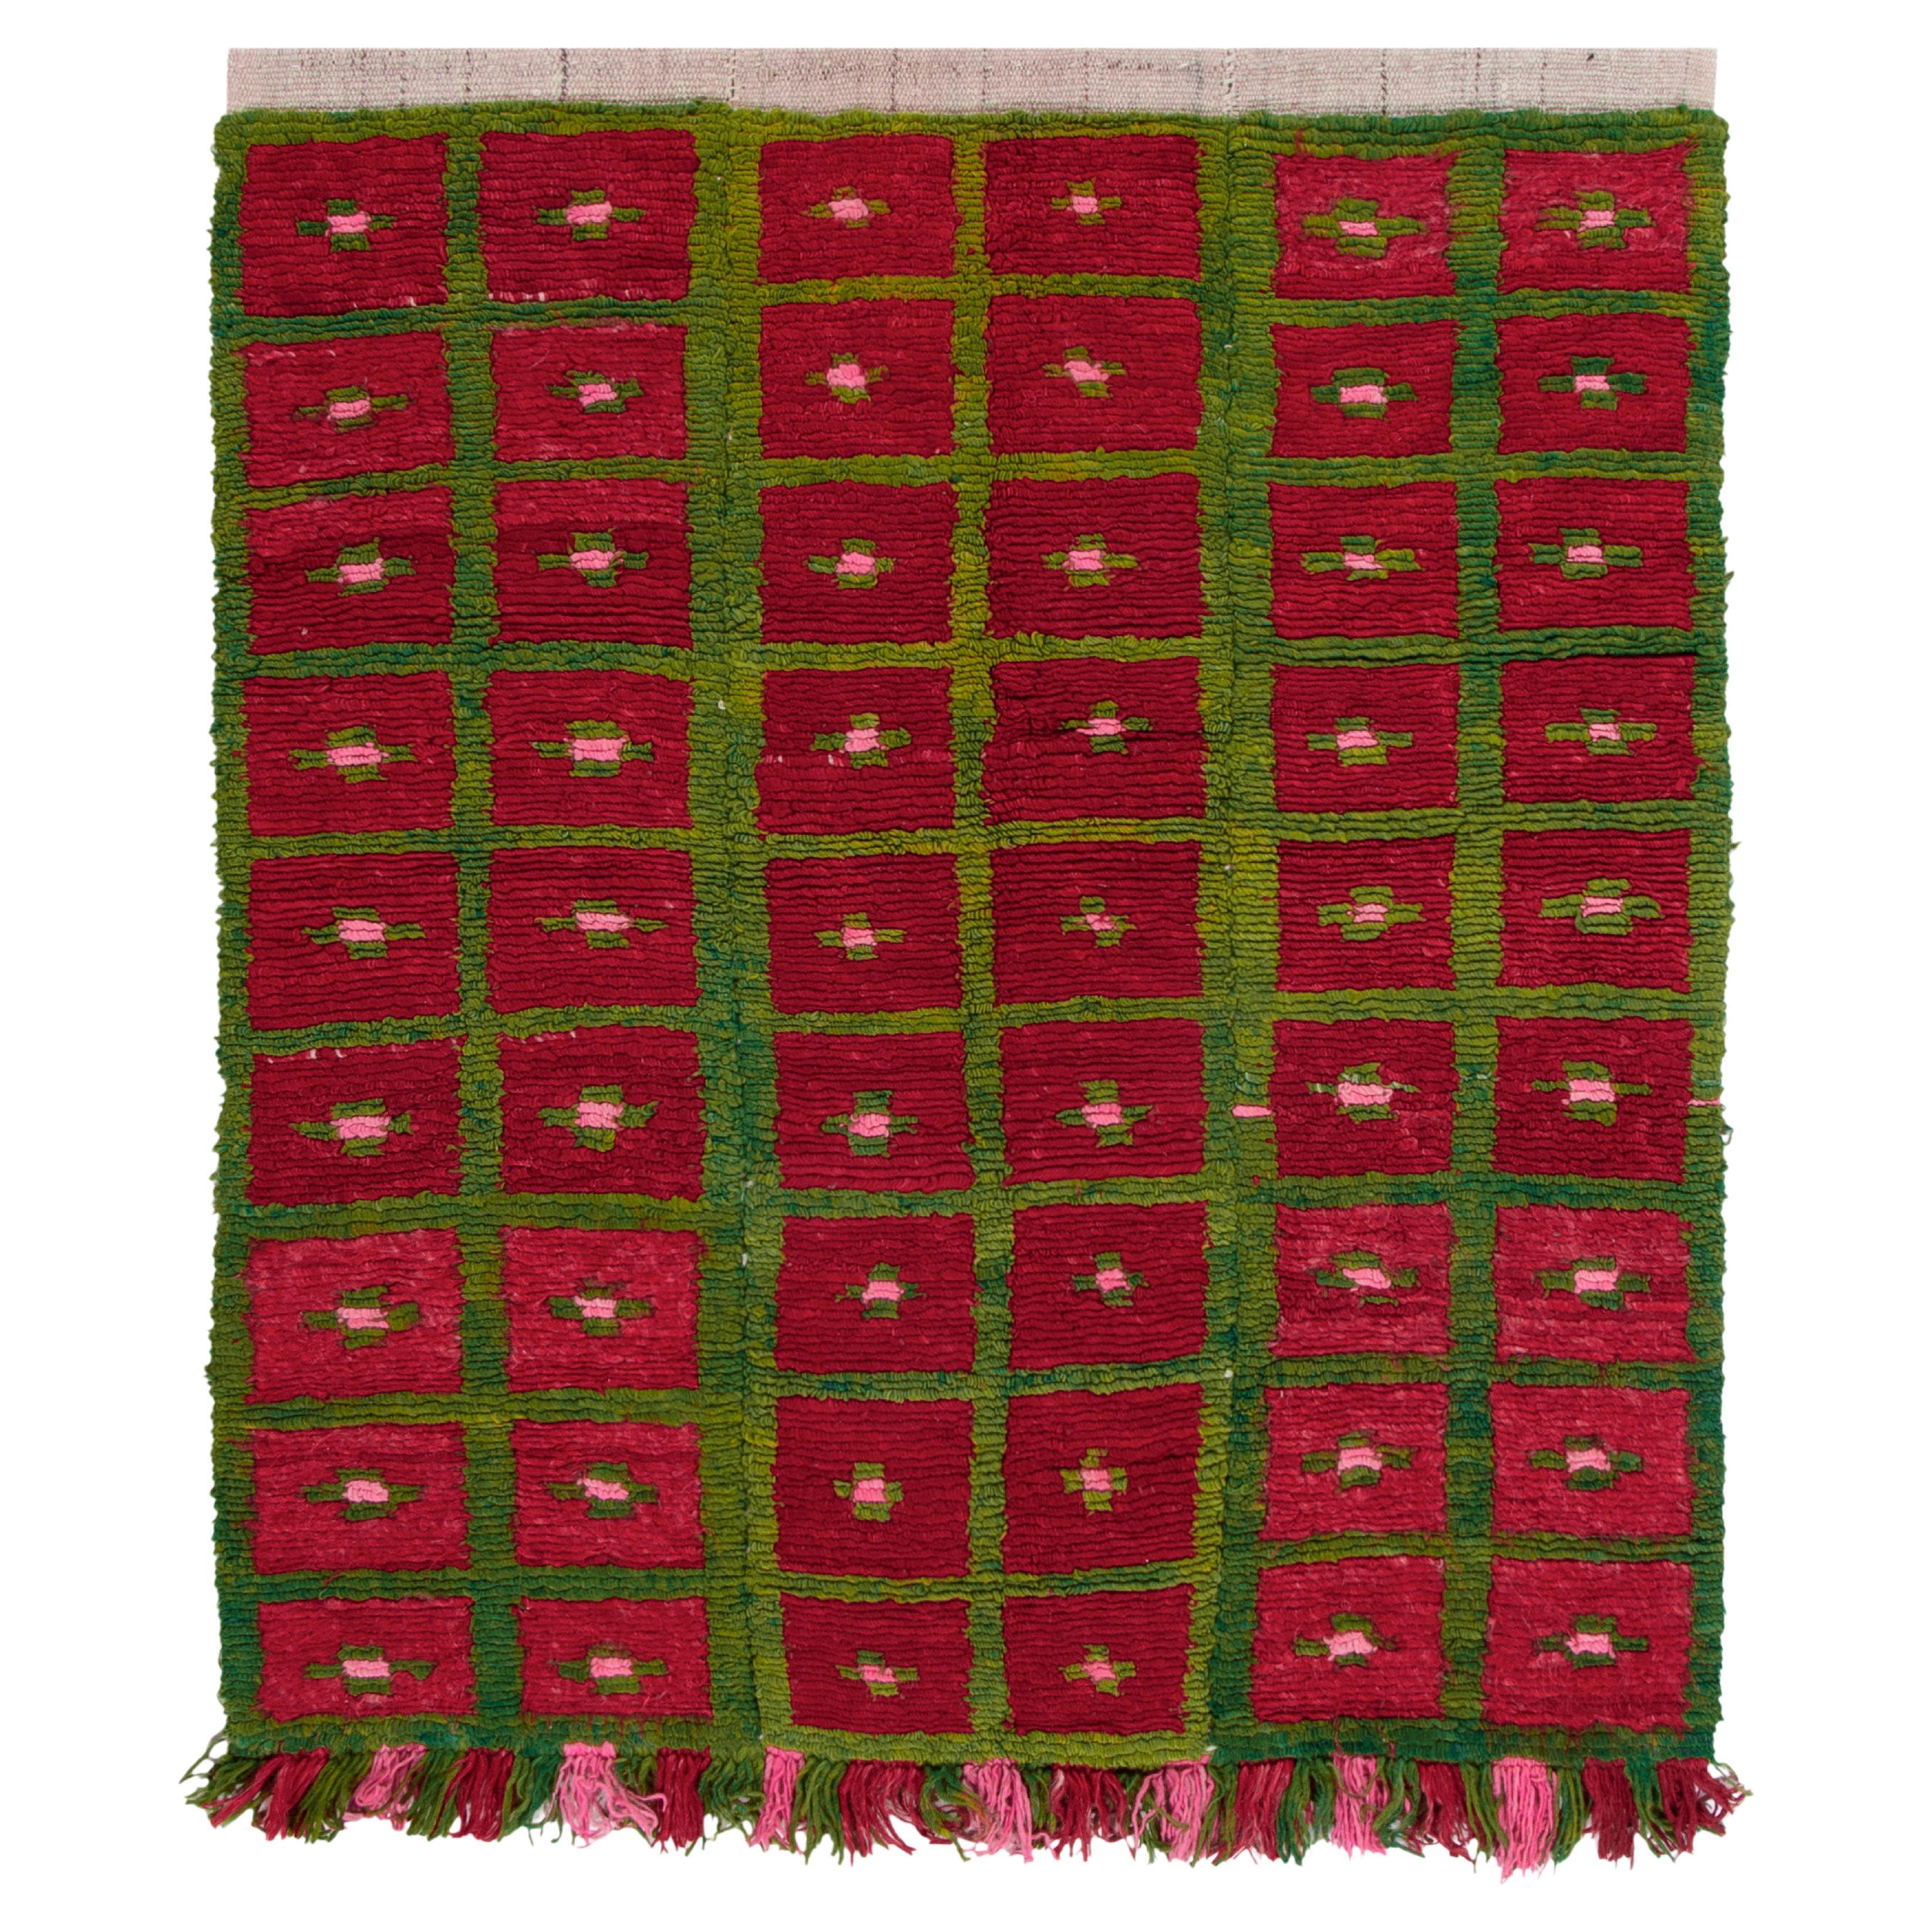 1950s Vintage Tulu Rug in Red, Green, Pink Geometric Pattern by Rug & Kilim